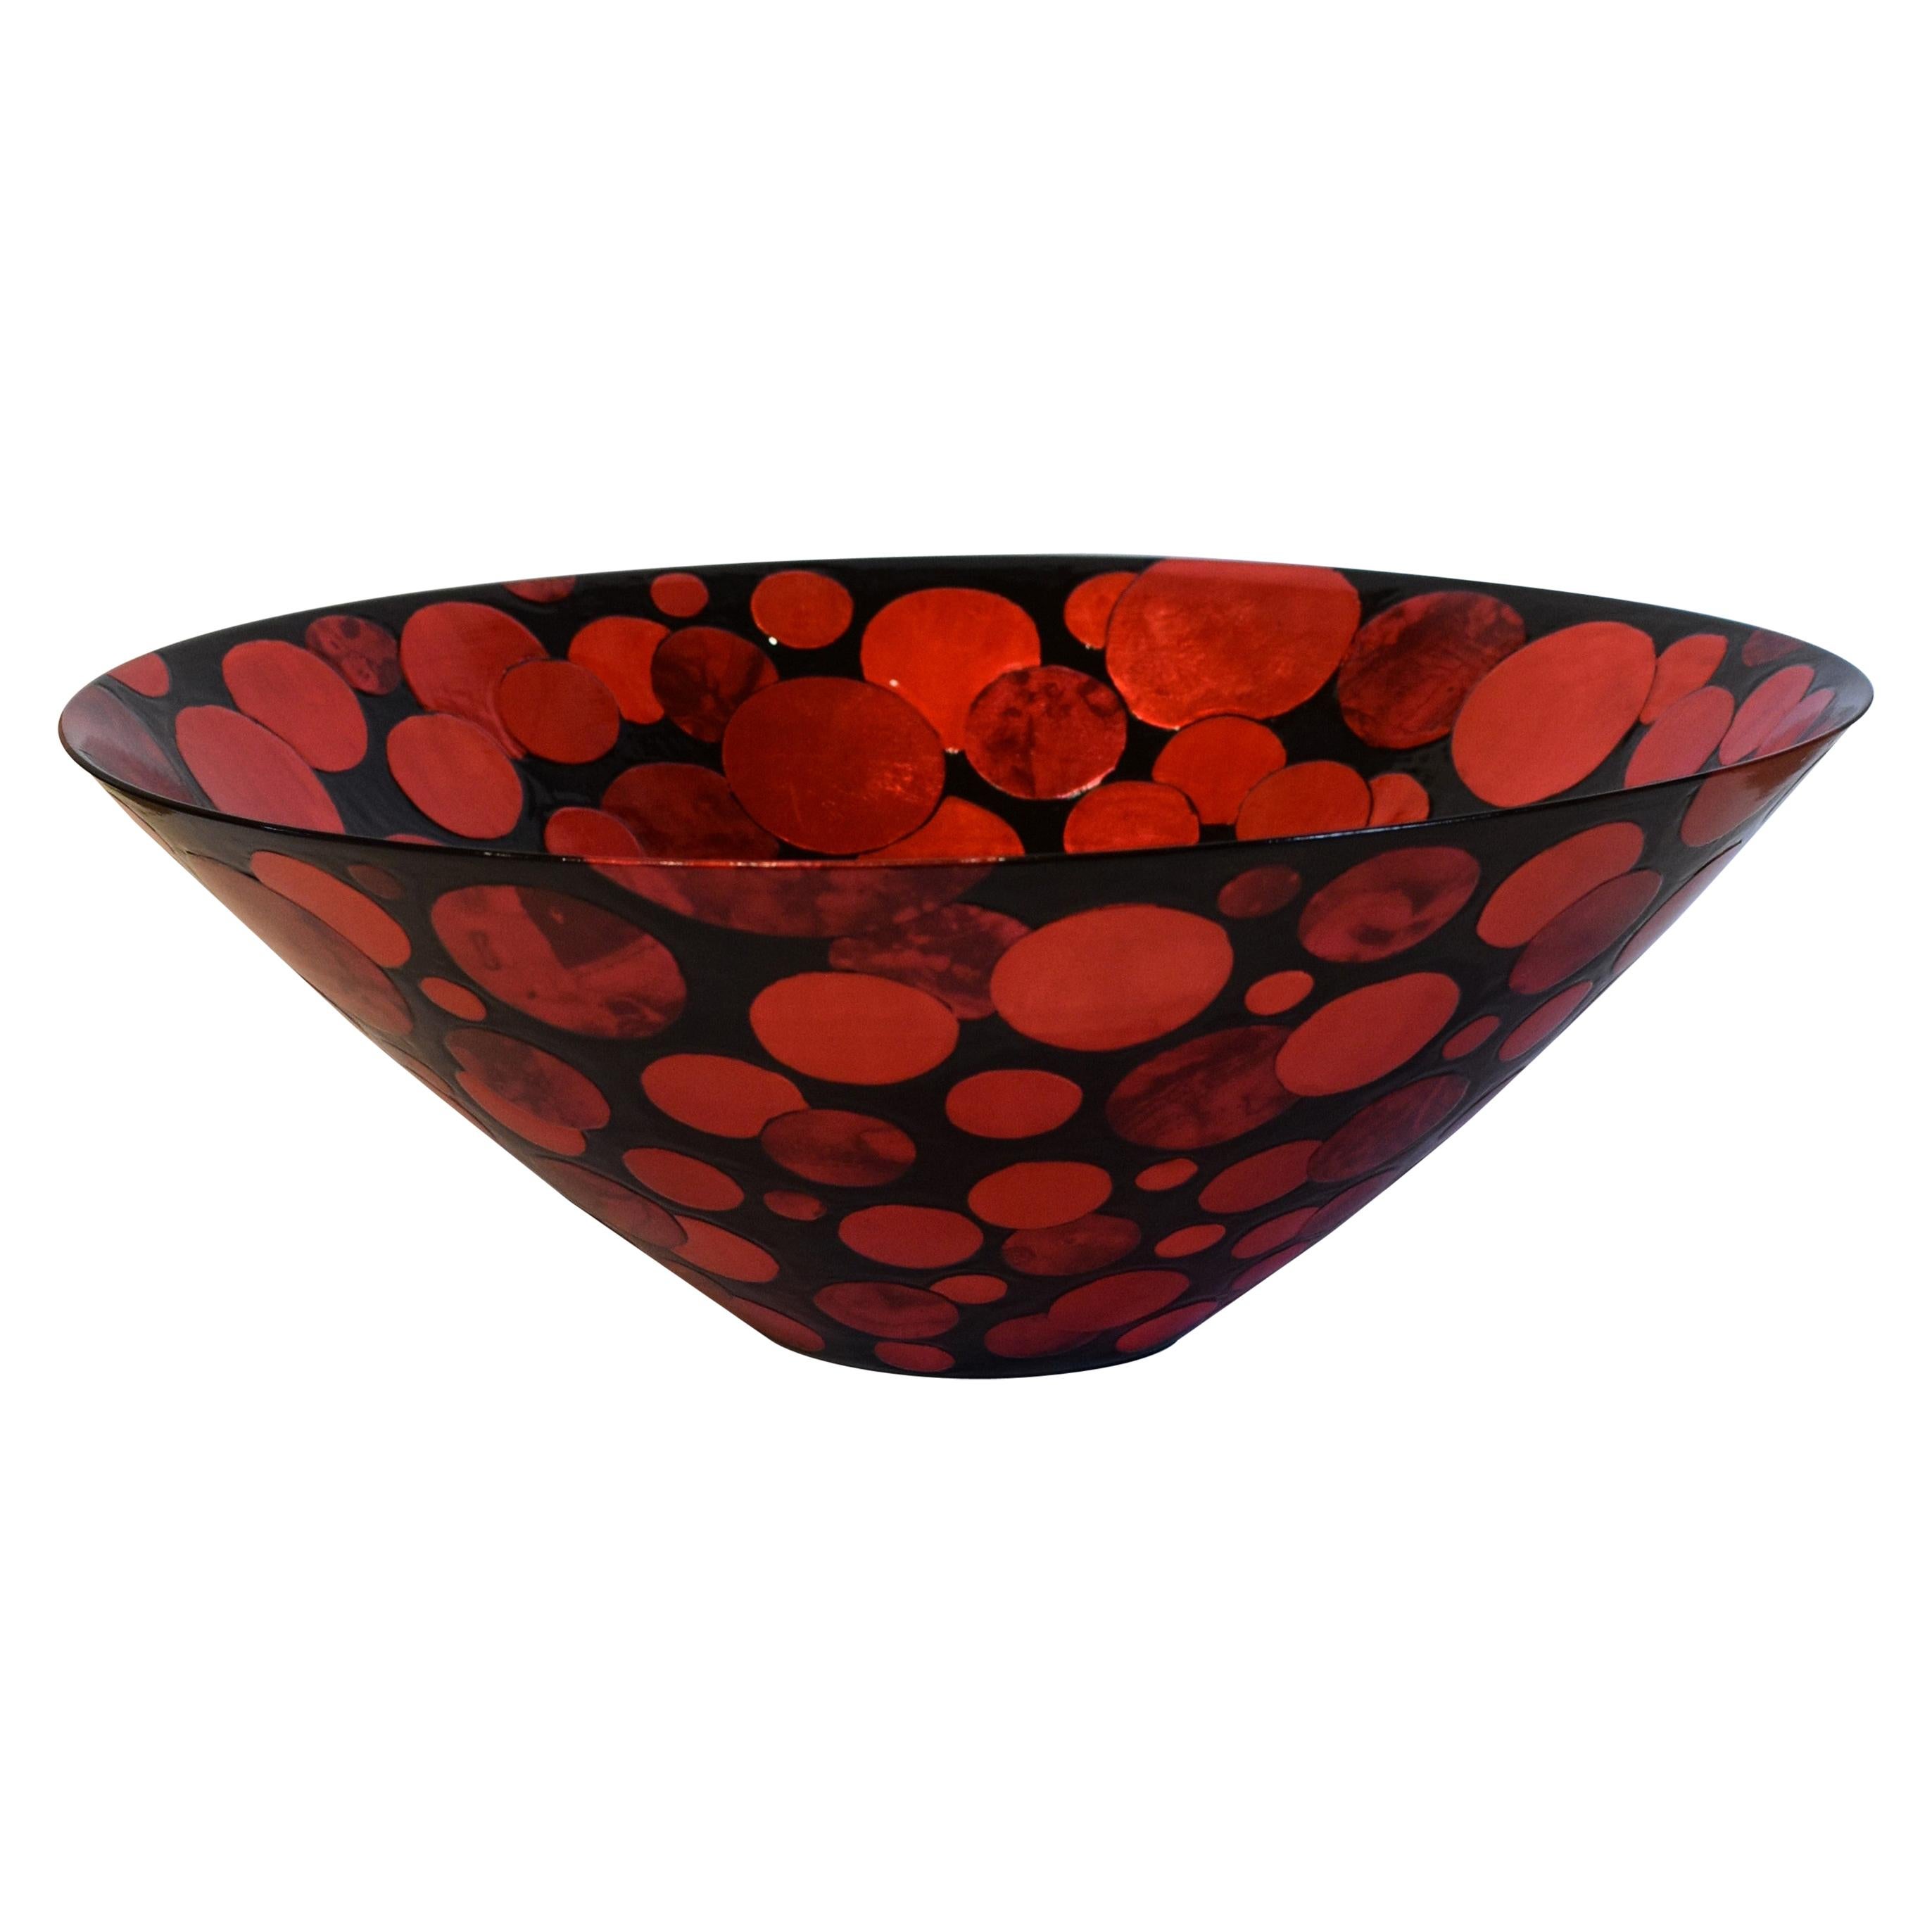 Vase contemporain japonais en porcelaine rouge et noire, réalisé par un maître artiste en vente